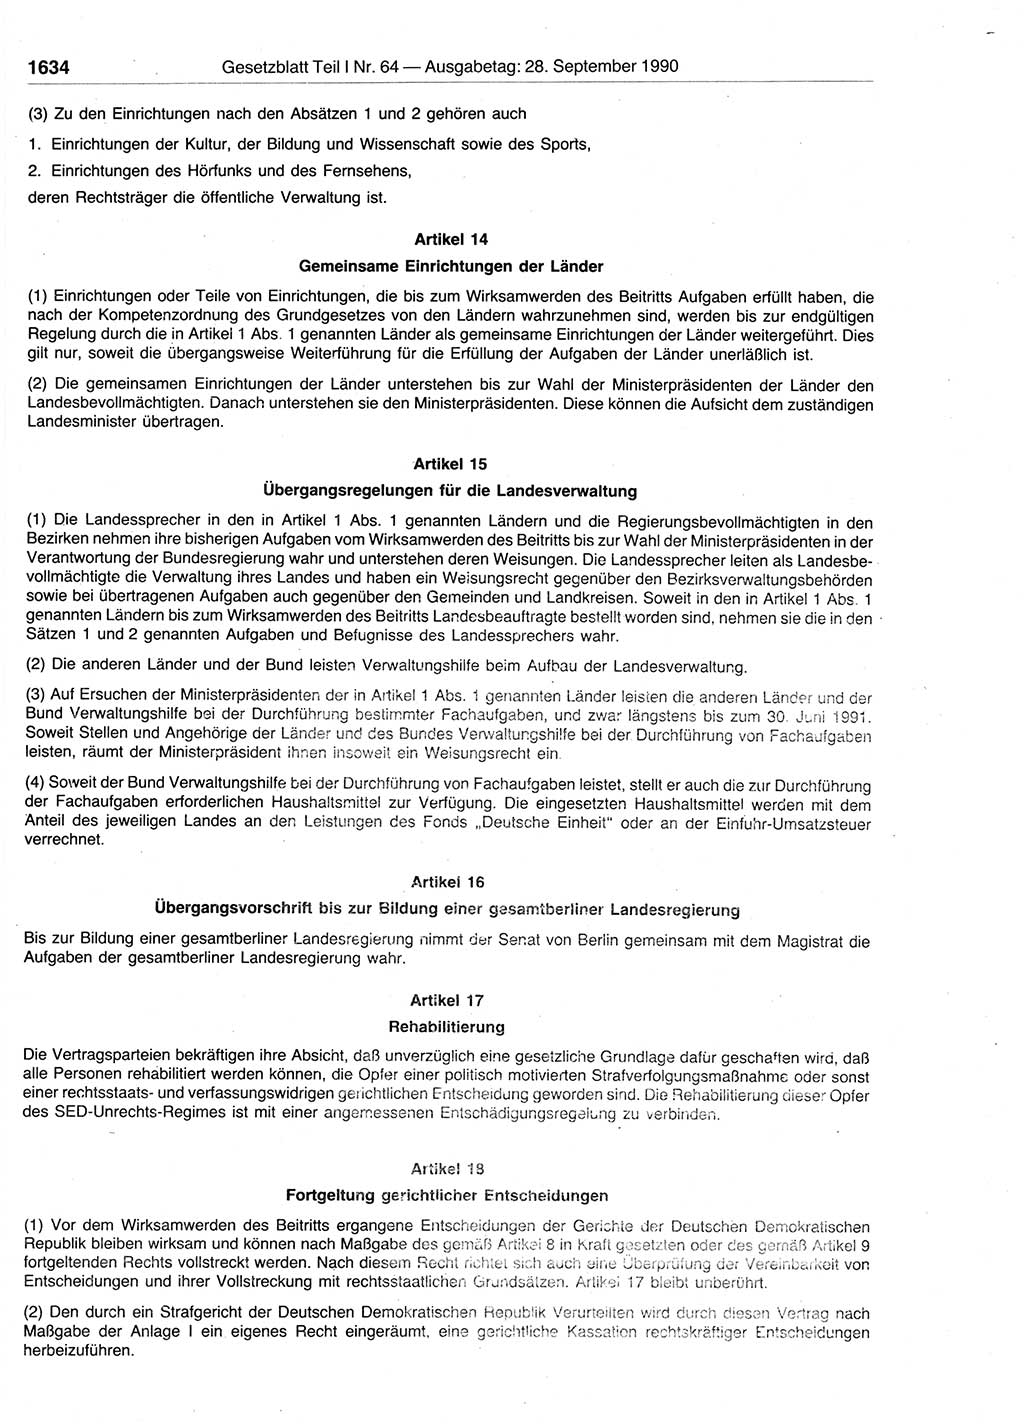 Gesetzblatt (GBl.) der Deutschen Demokratischen Republik (DDR) Teil Ⅰ 1990, Seite 1634 (GBl. DDR Ⅰ 1990, S. 1634)